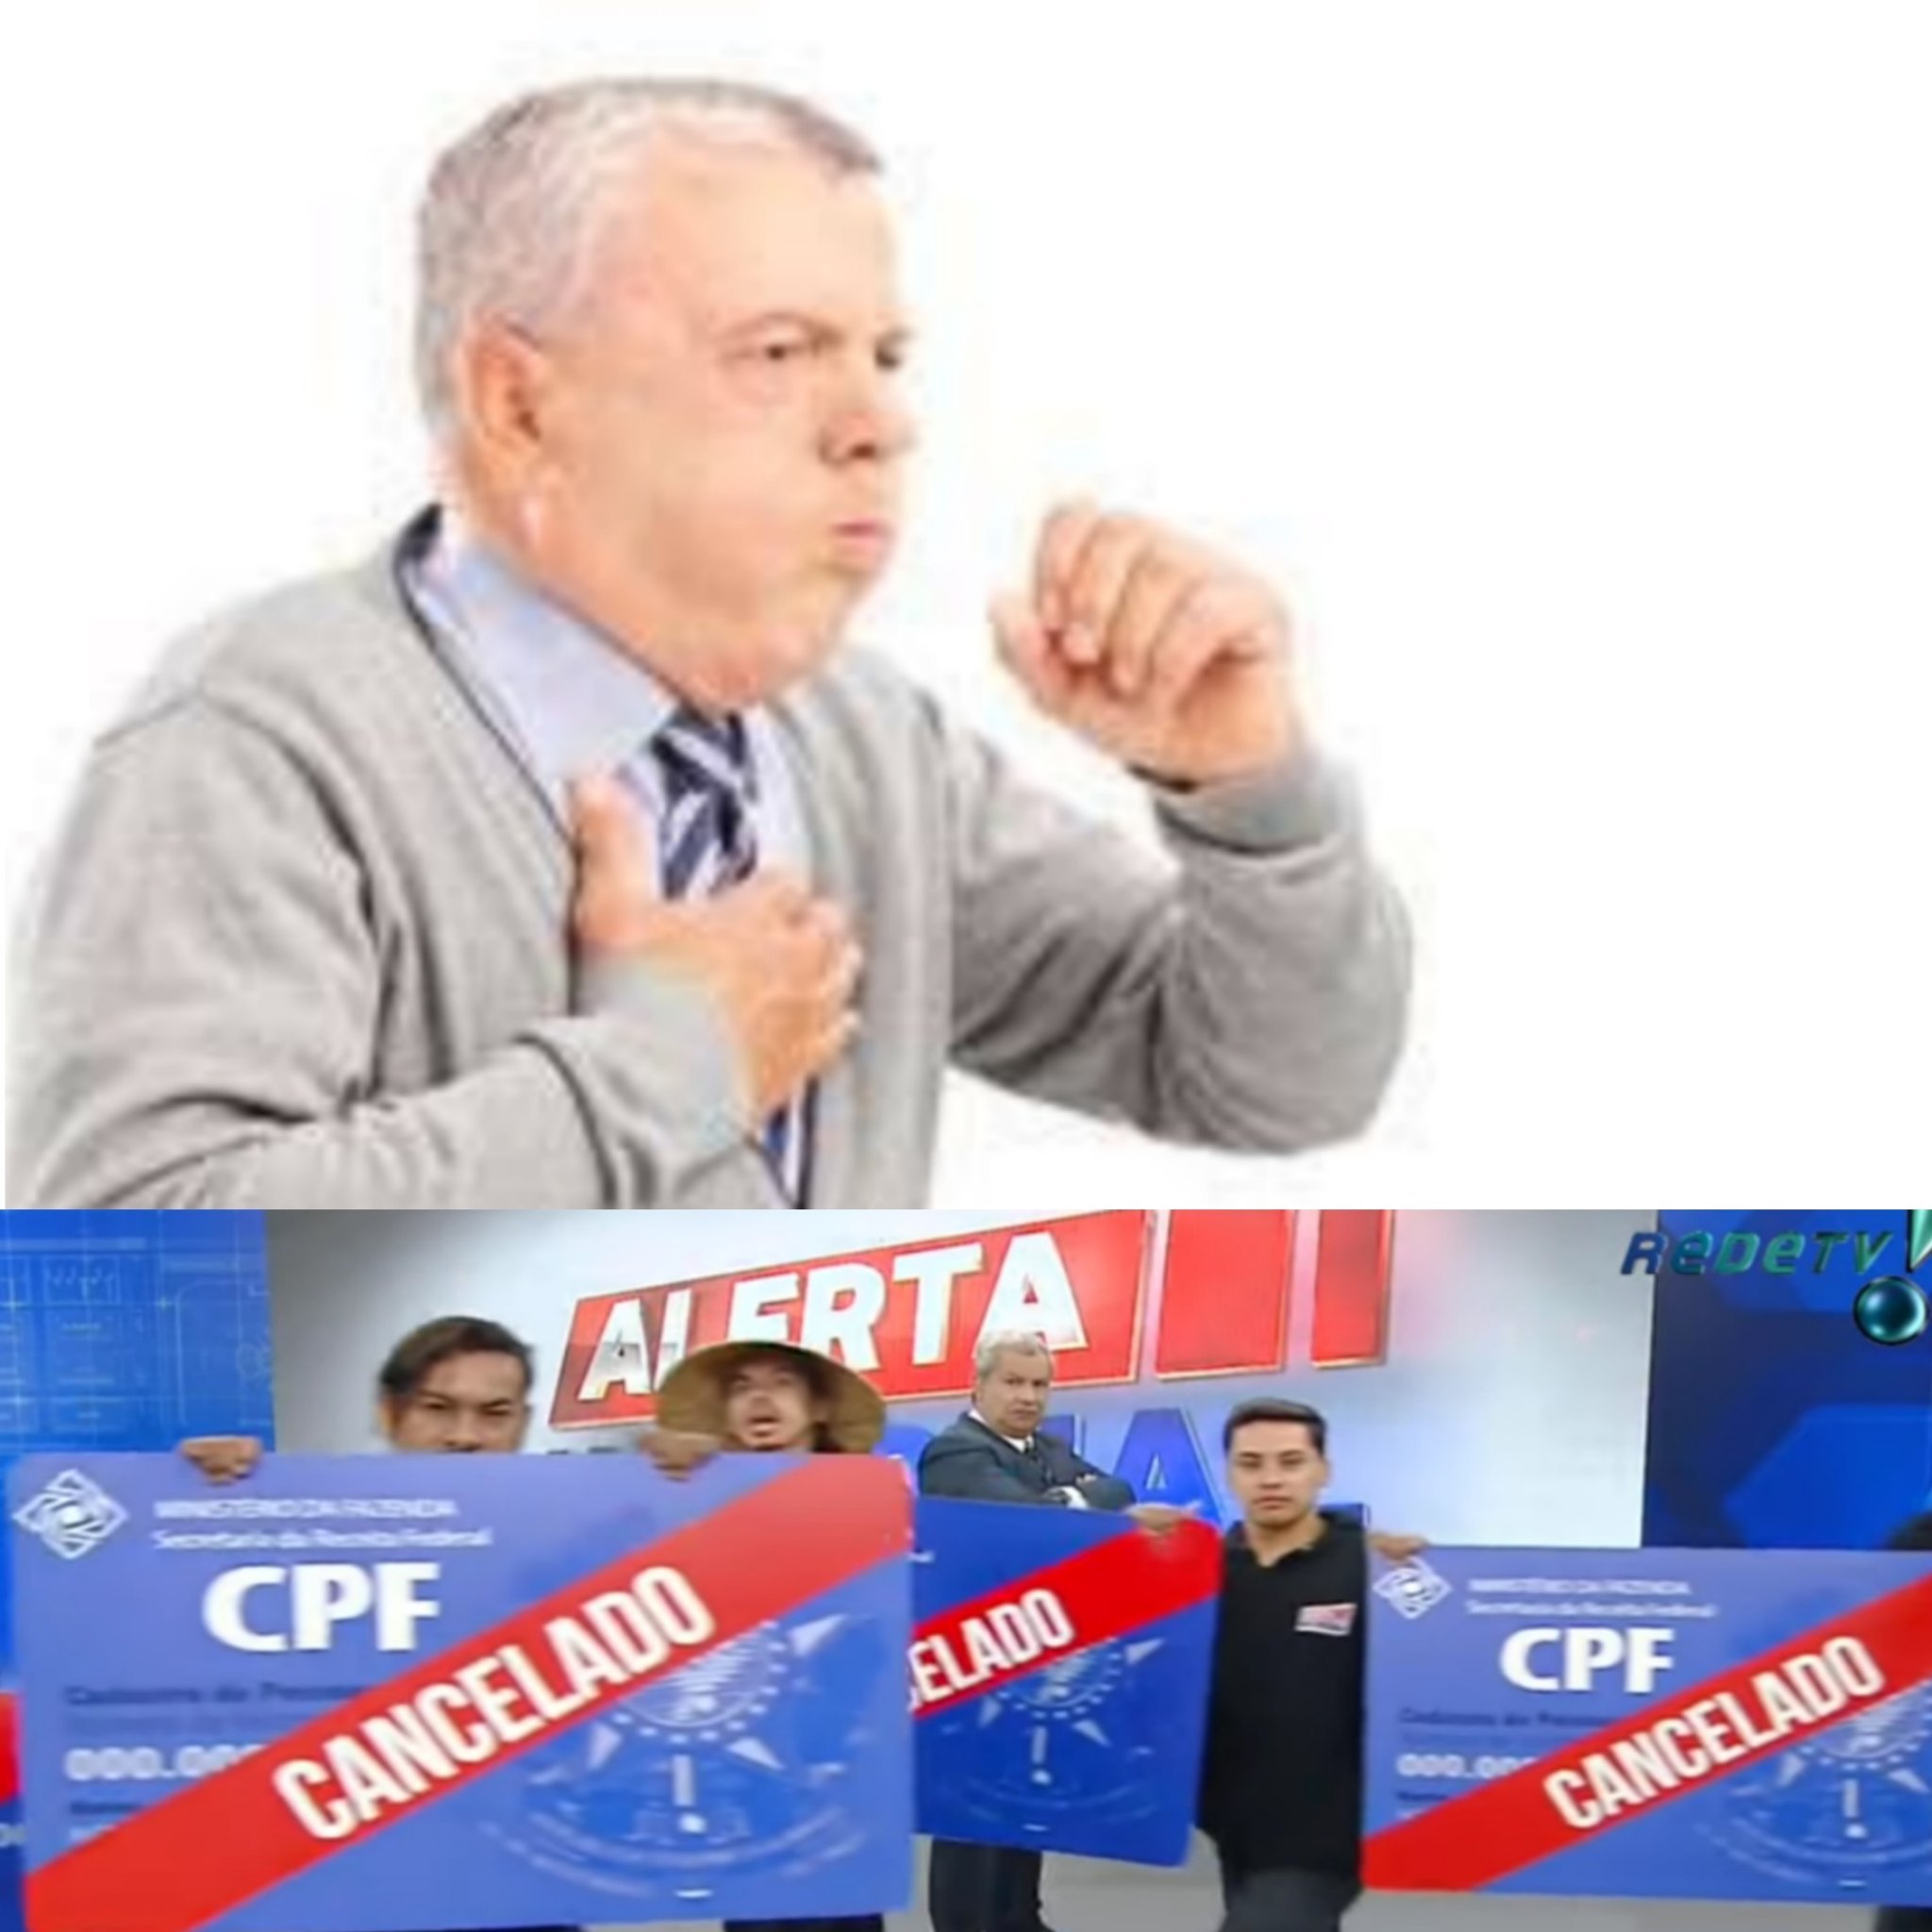 CPF cancelado - meme